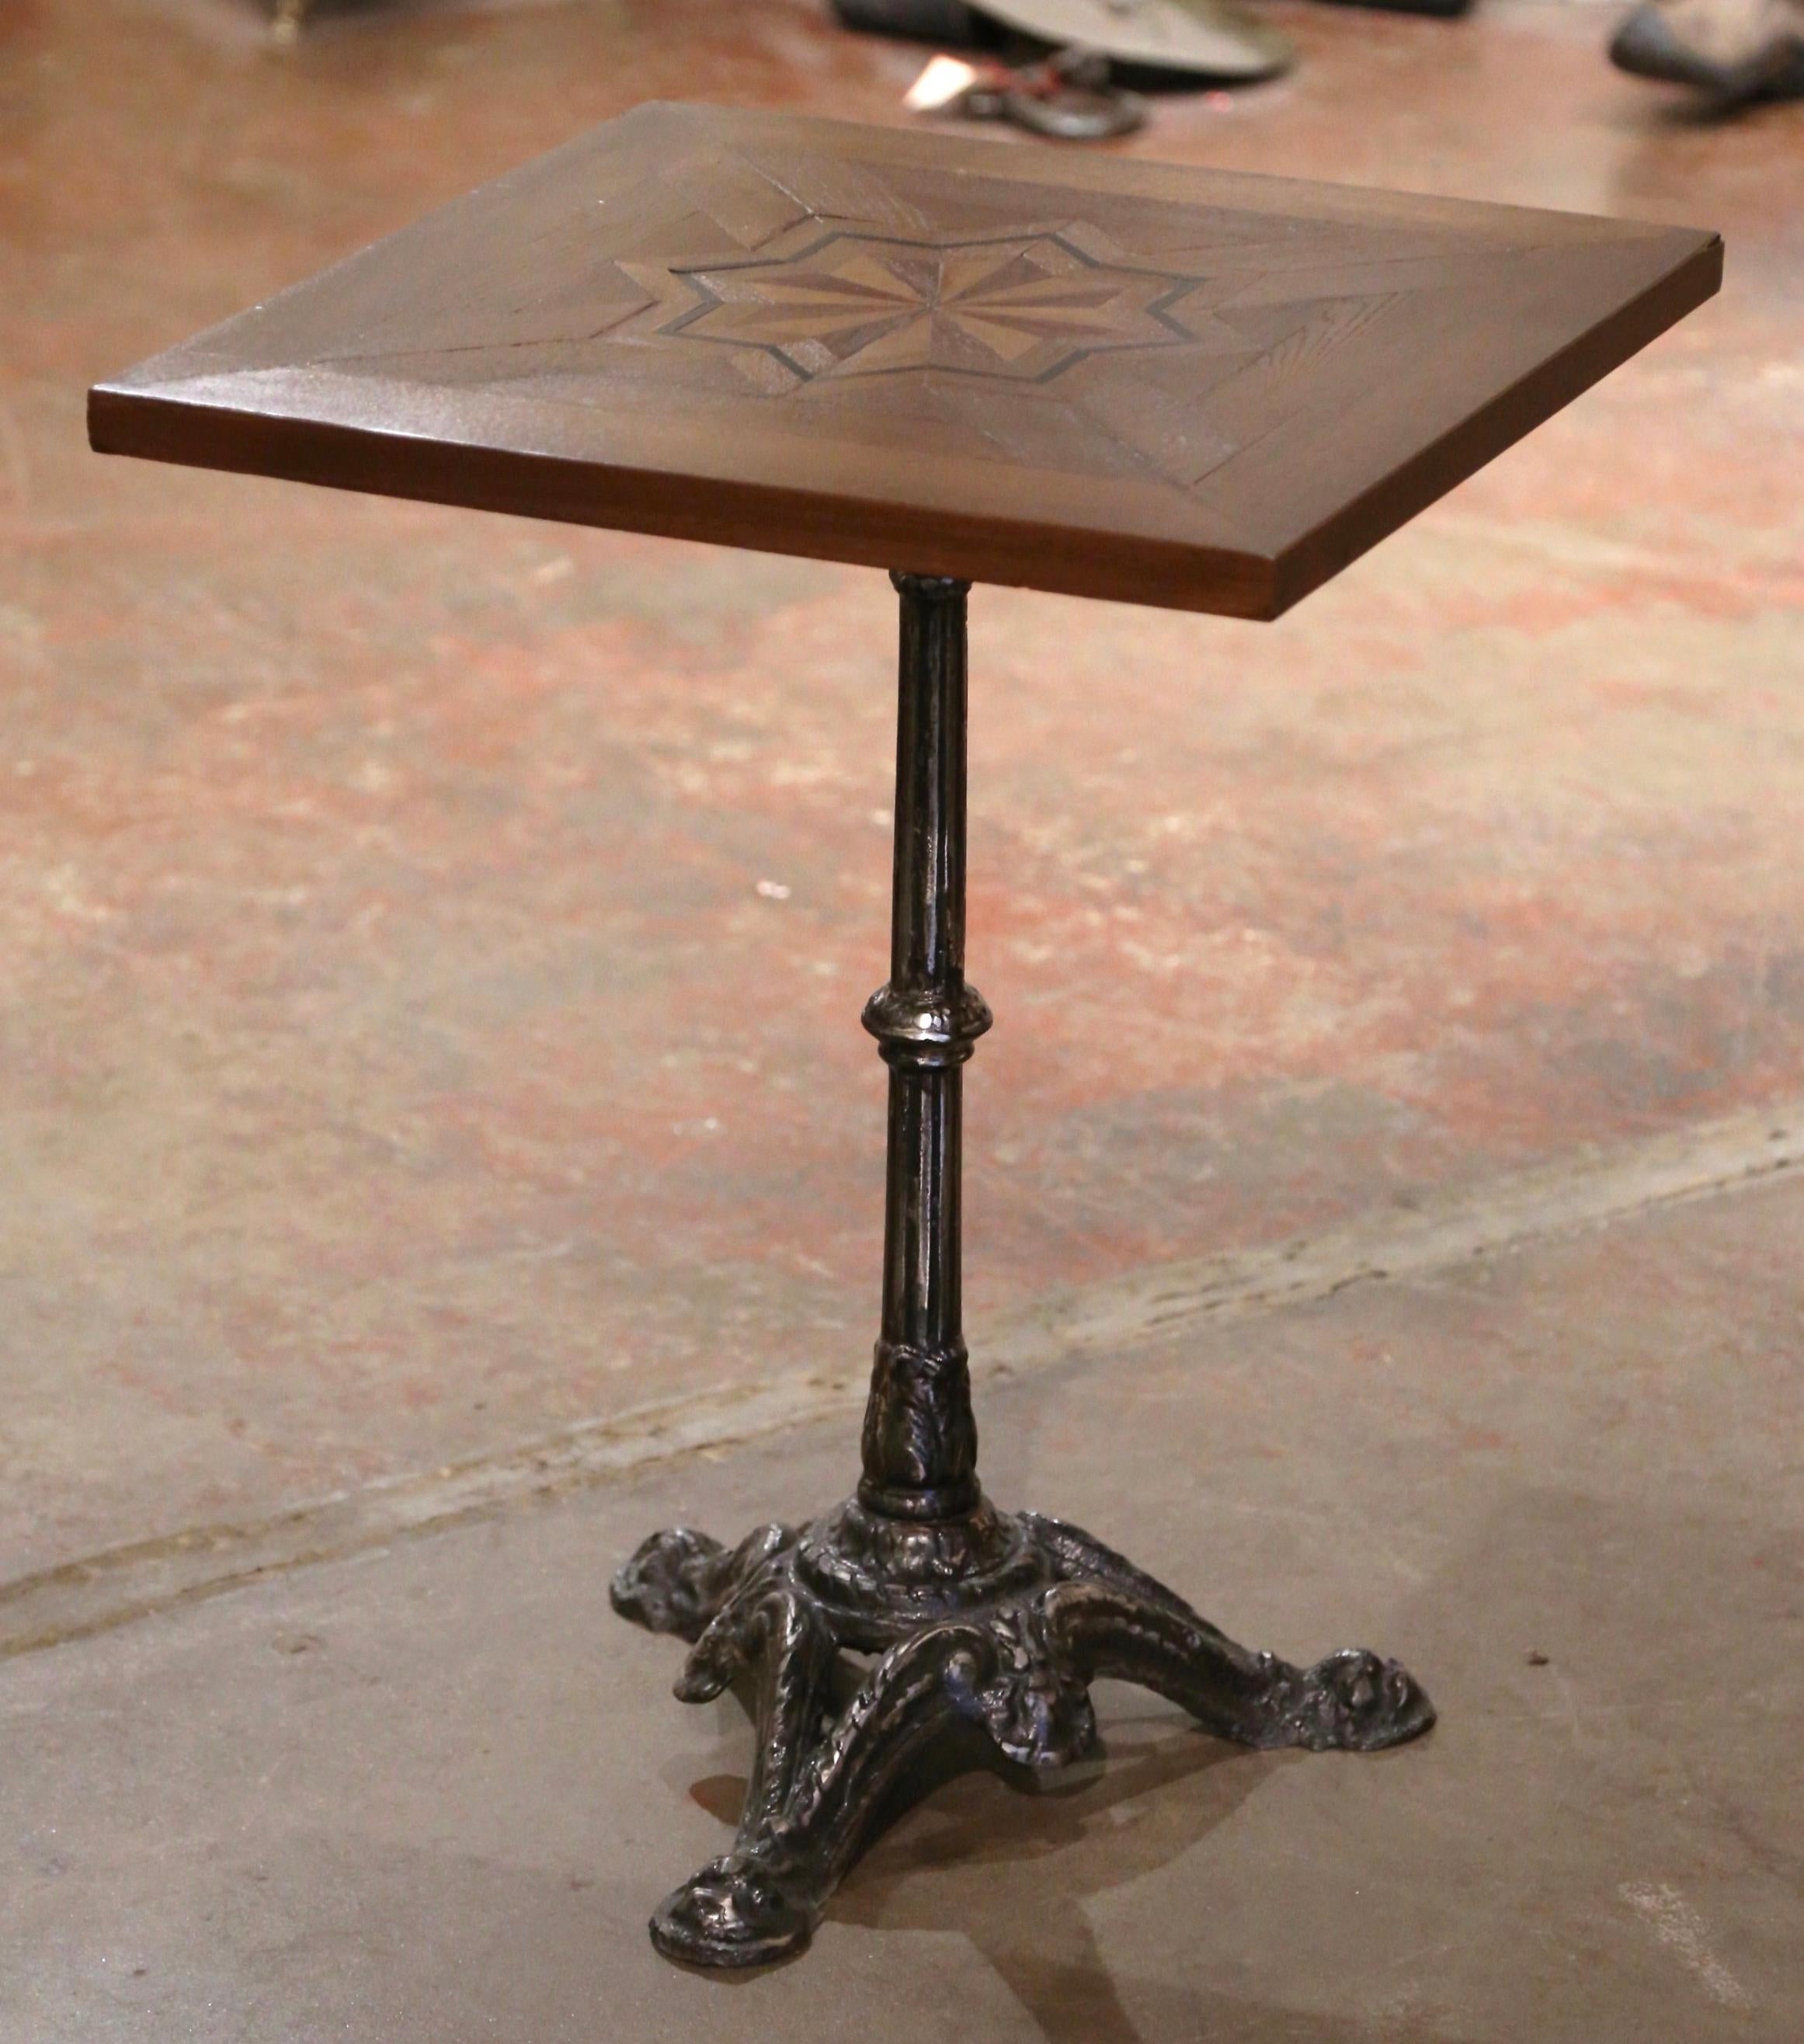 Dieser exquisite, antike Gueridon-Tisch wurde um 1870 in Paris, Frankreich, hergestellt. Der komplizierte Eisensockel steht auf drei mit Akanthusblattmotiven verzierten Tatzenfüßen über einem geschnitzten und kannelierten Schaft. Der klassische